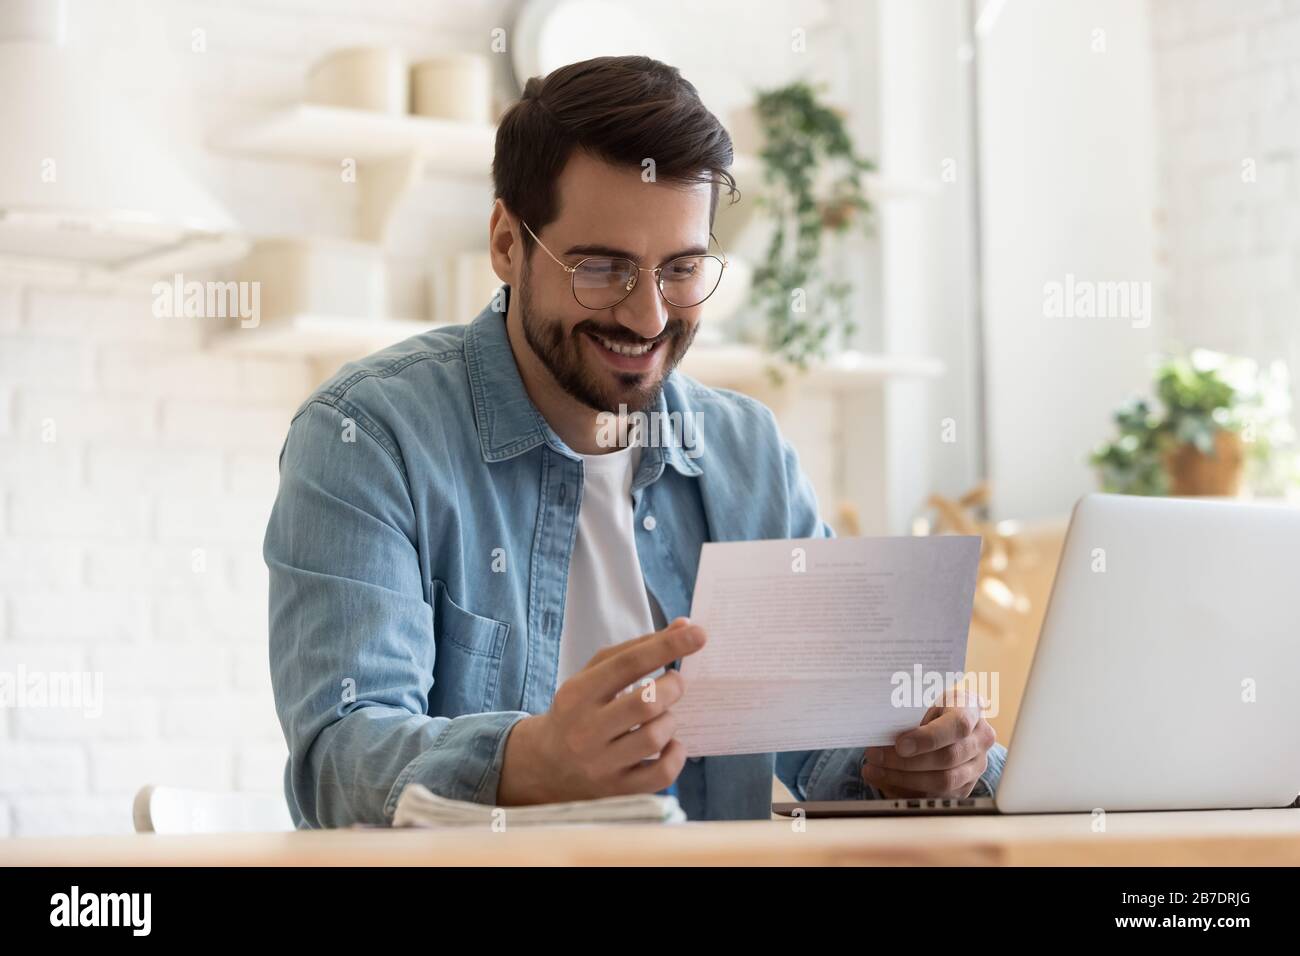 Lächelnder junger Mann liest gute Nachrichten in Papierbenachrichtigung Stockfoto